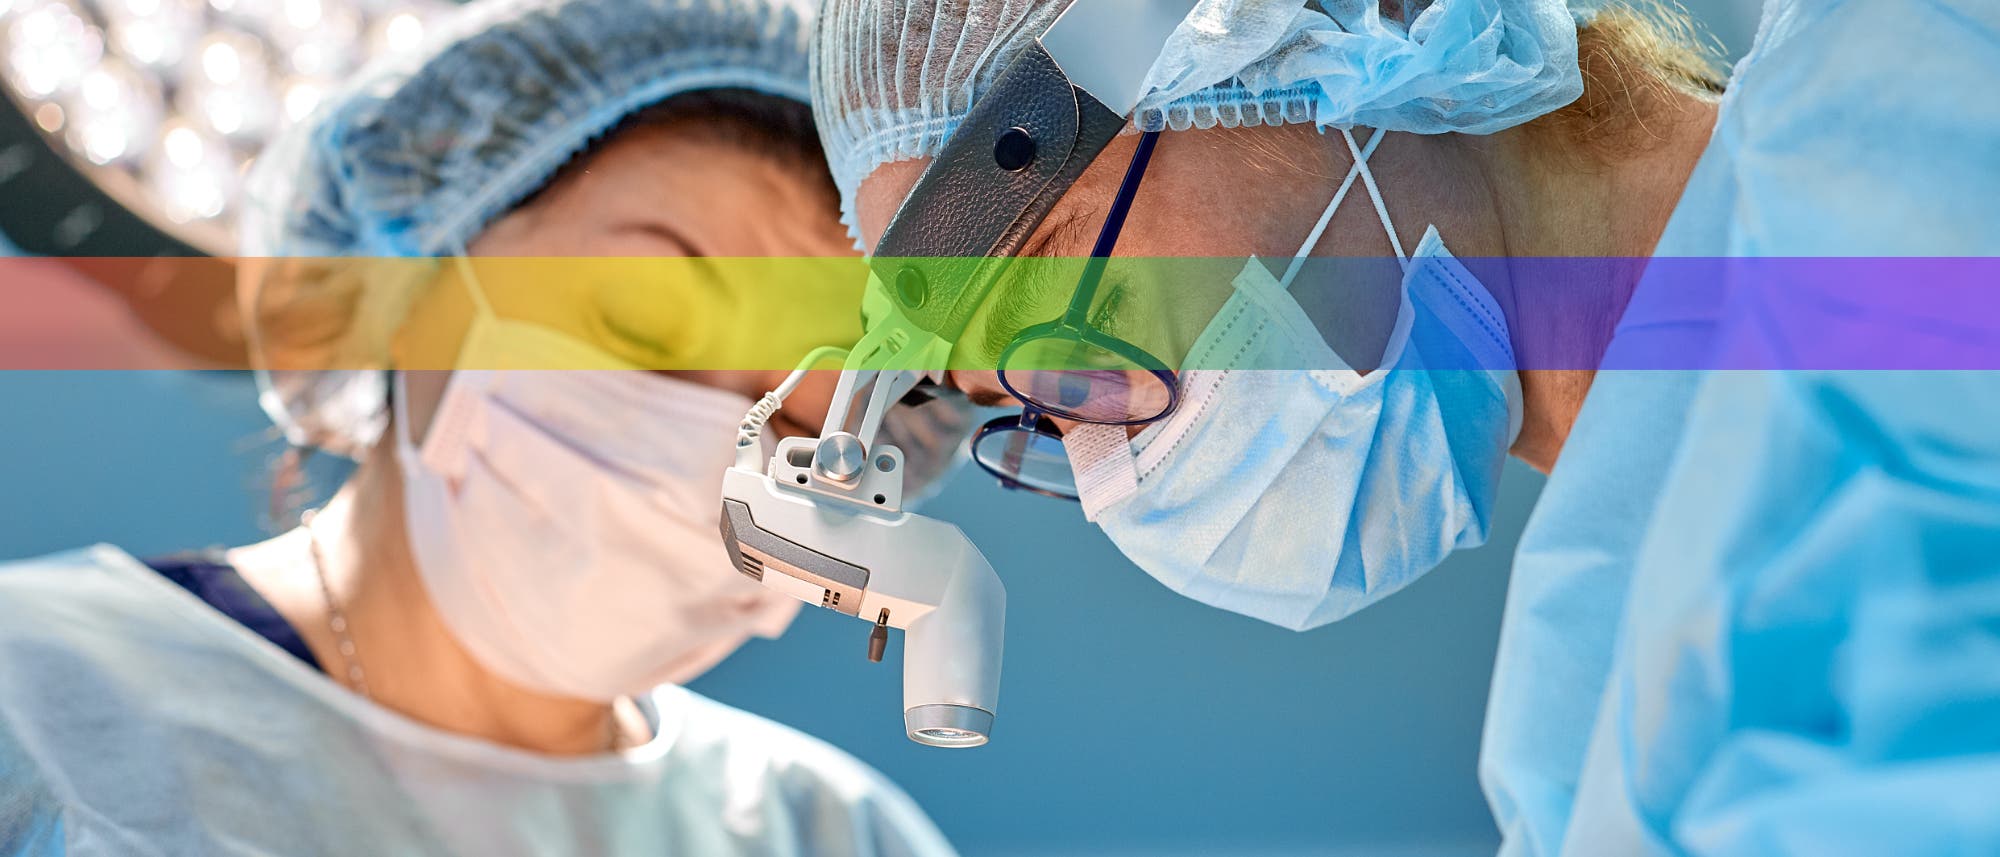 Eine Gruppe von Chirurgen während einer Operation im Operationssaal.